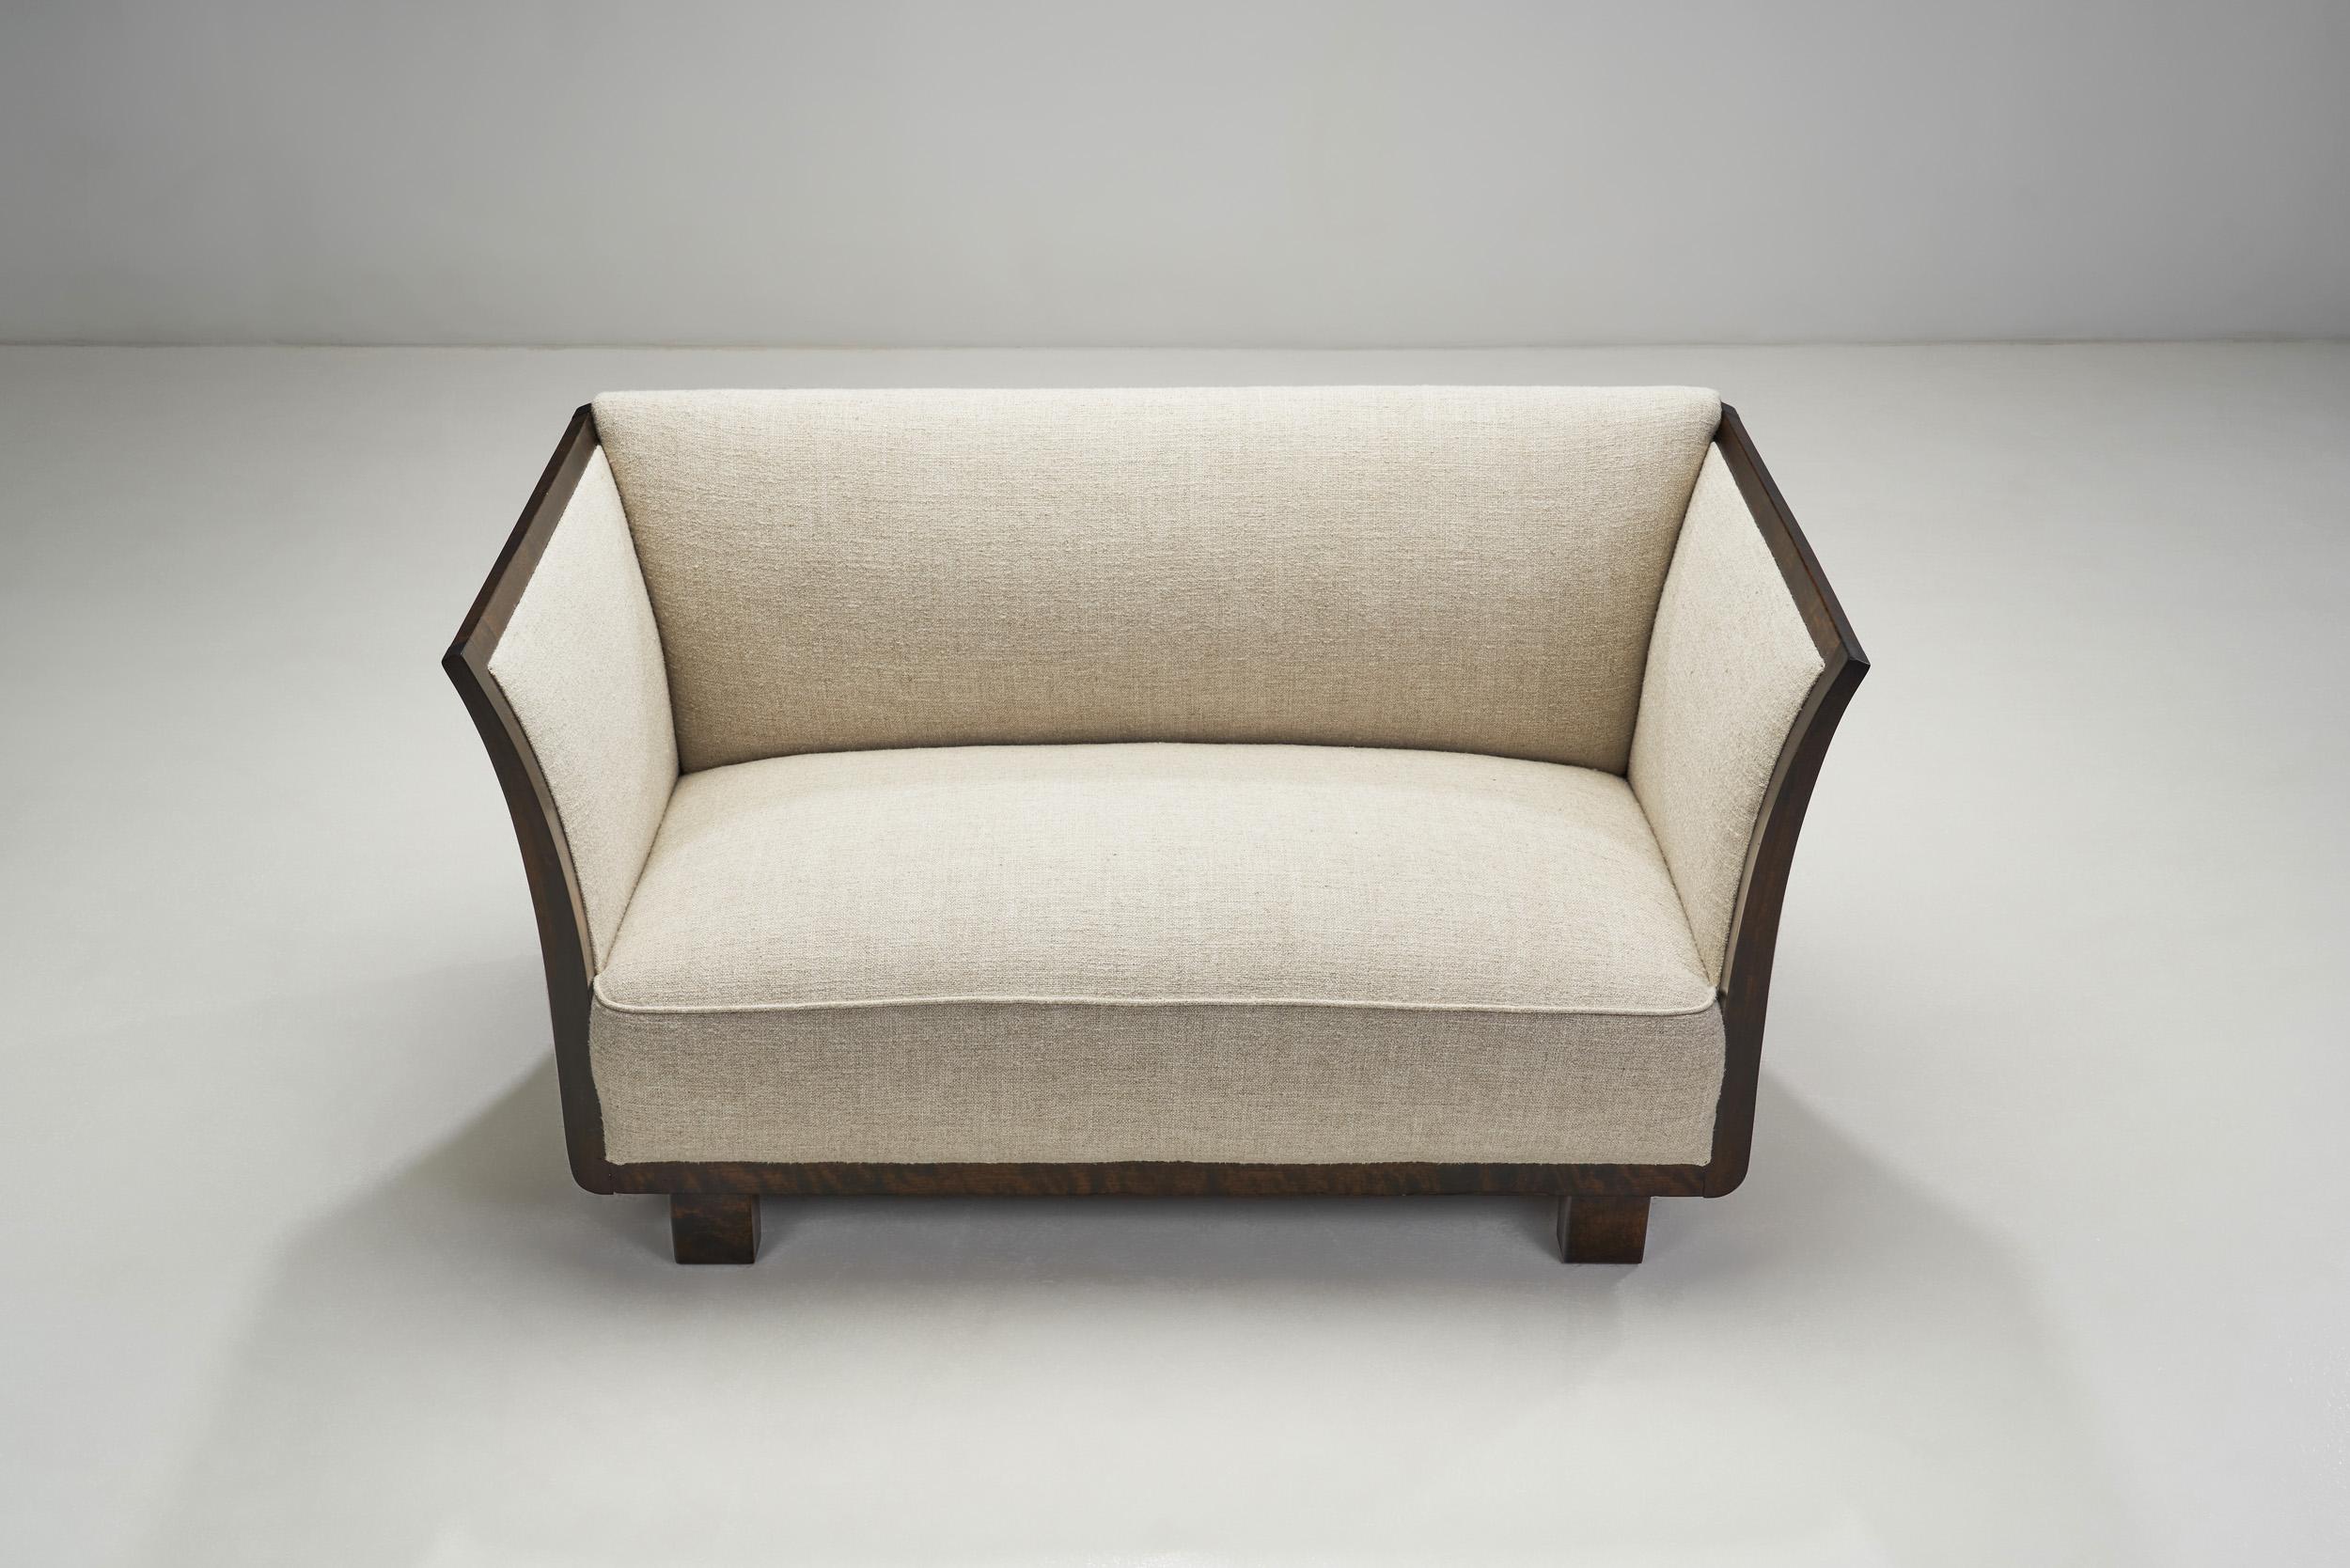 Bouclé Mid-Century Modern Sofa by a Danish Cabinetmaker, Denmark, ca 1950s For Sale